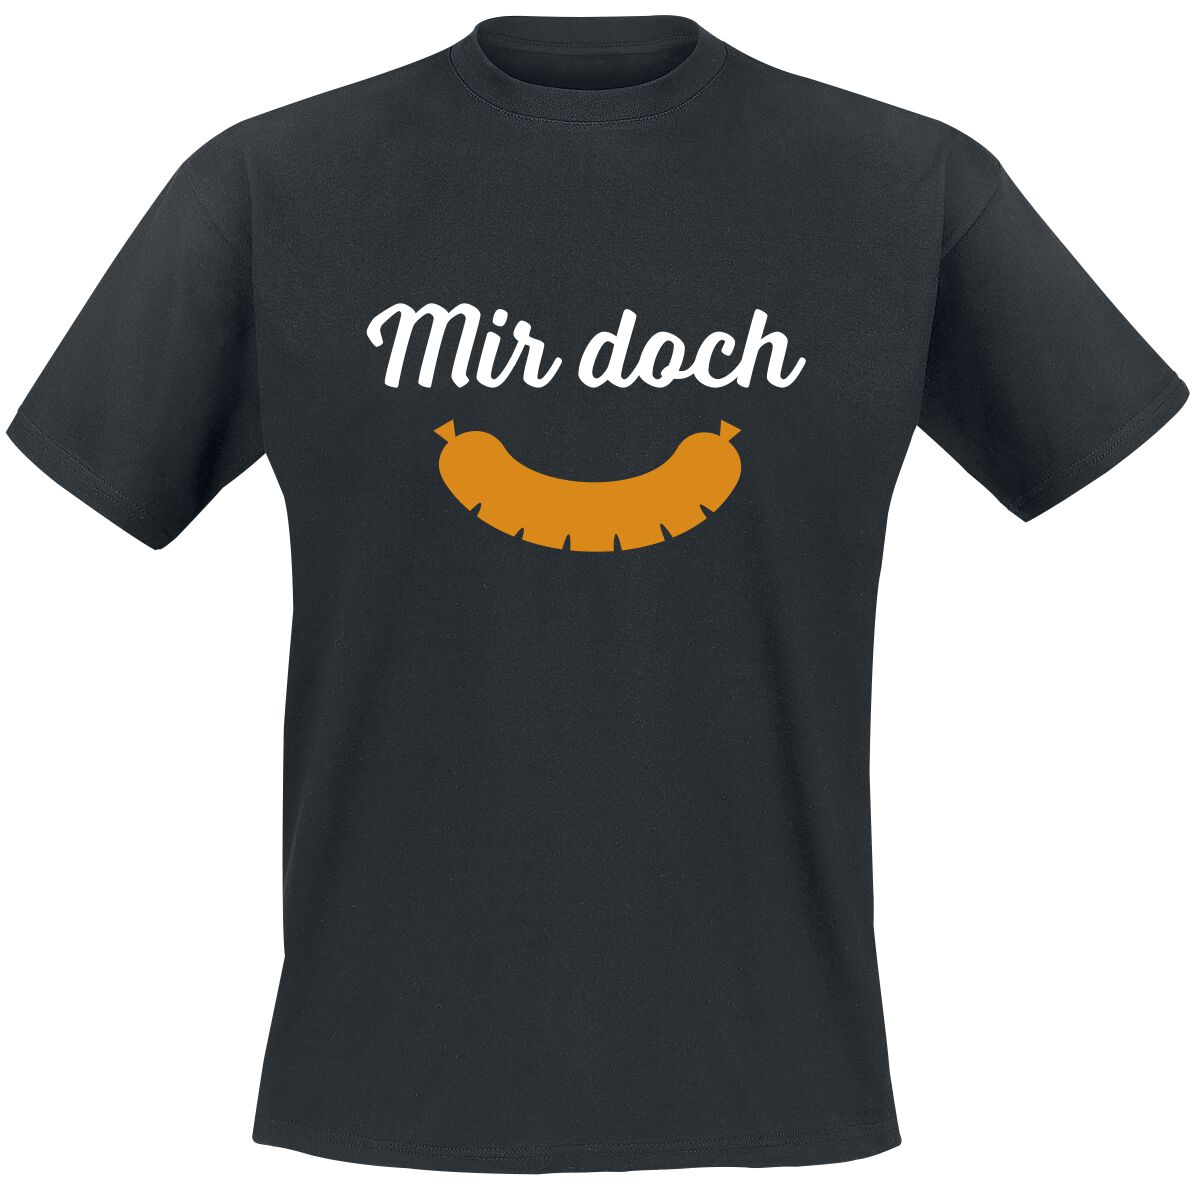 Food T-Shirt - Mir doch Wurst - M bis 5XL - für Männer - Größe XXL - schwarz